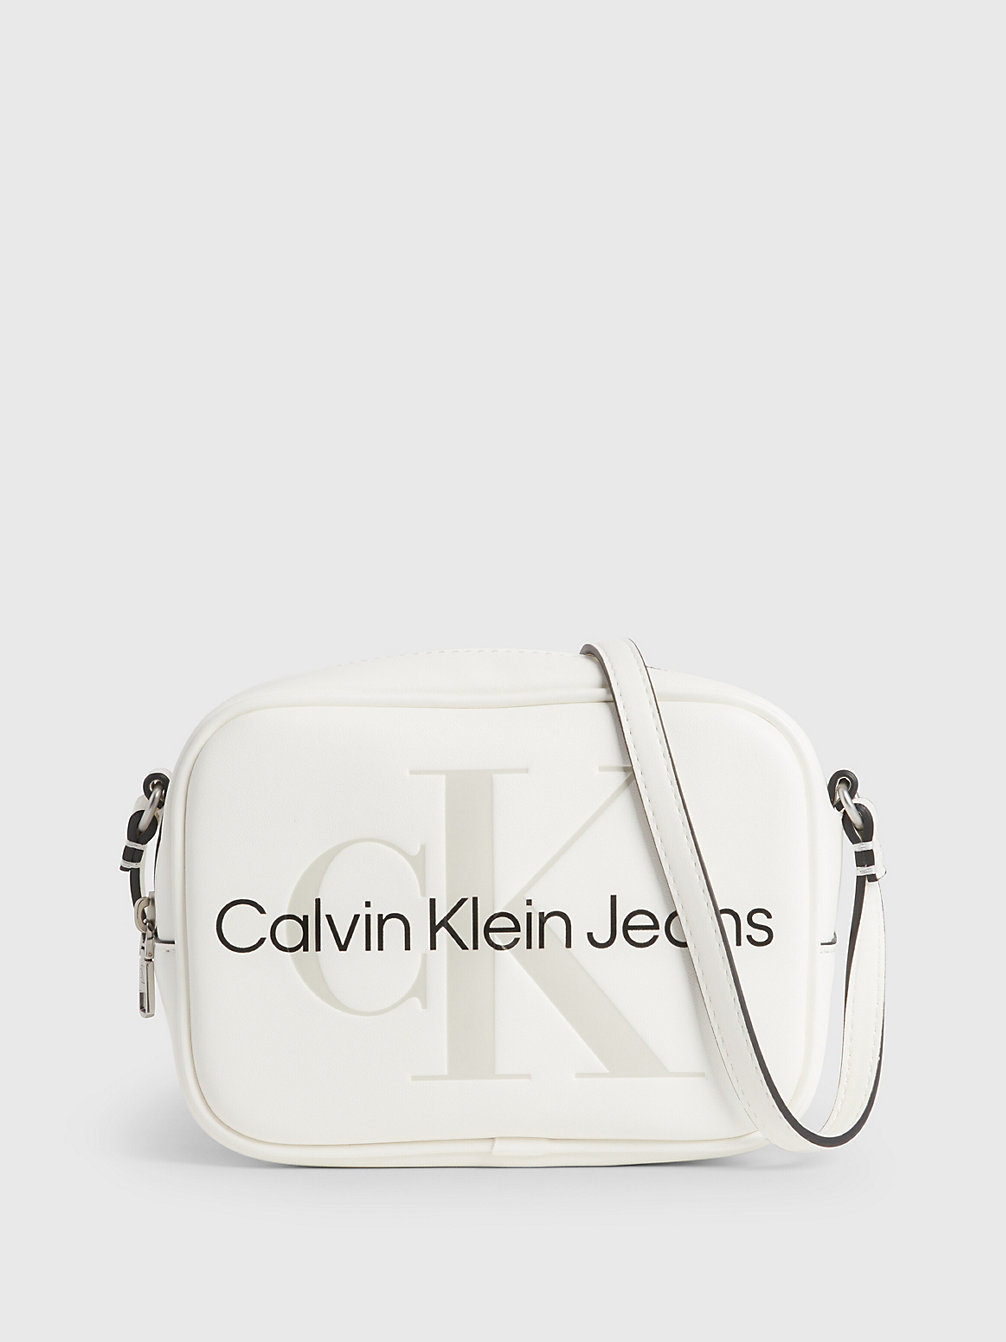 BRIGHT WHITE > Crossbody Bag > undefined Damen - Calvin Klein